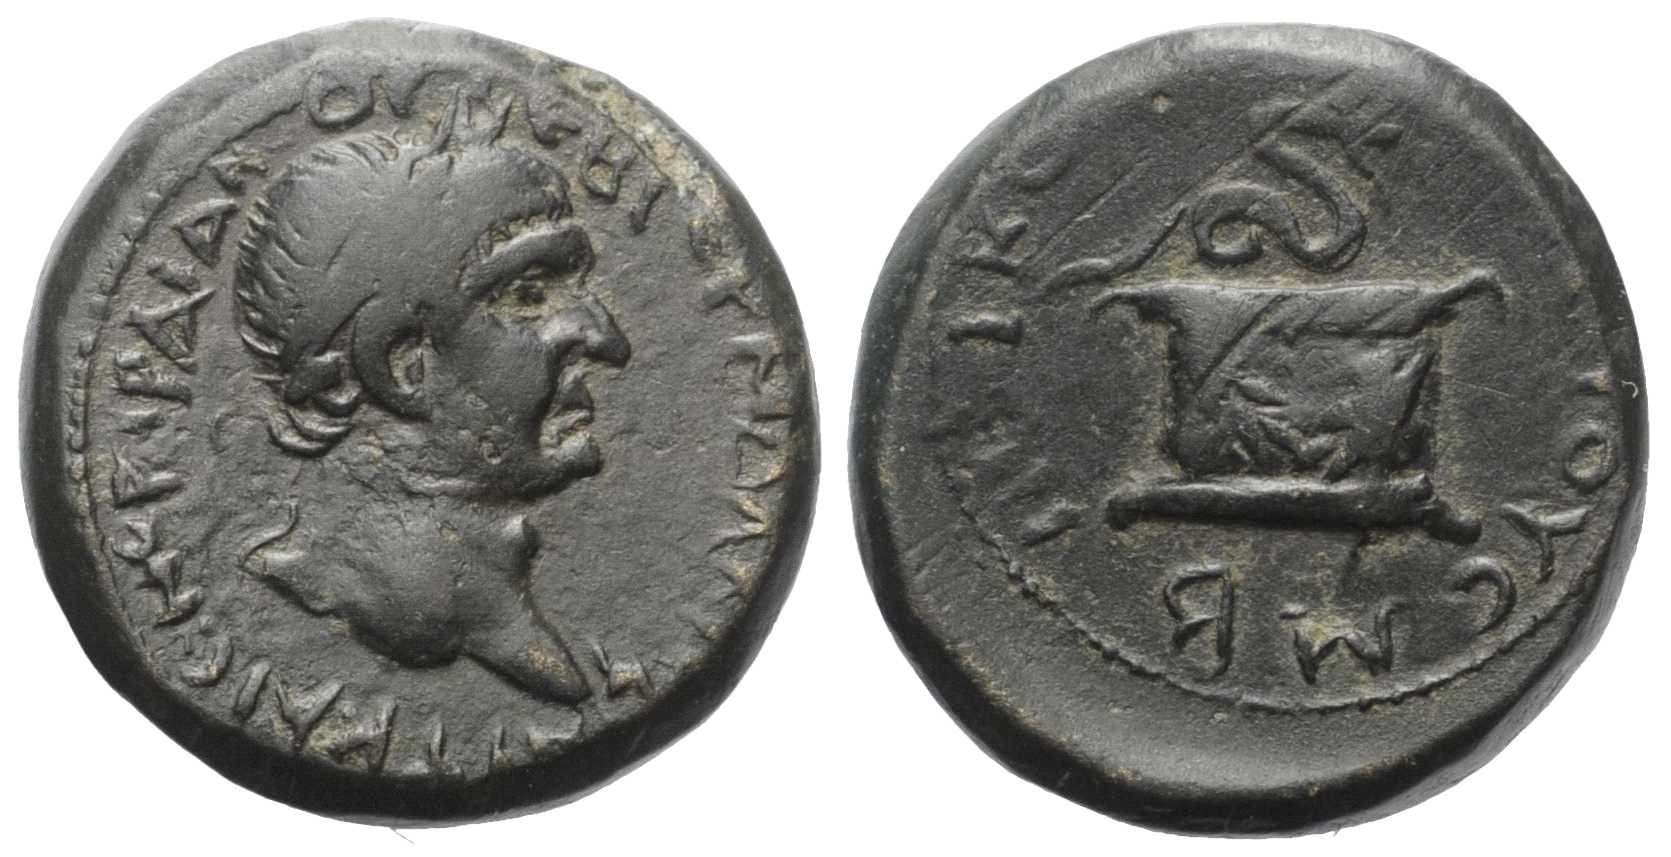 6722 Nicopolis ad Lycum Pontus Traianus AE